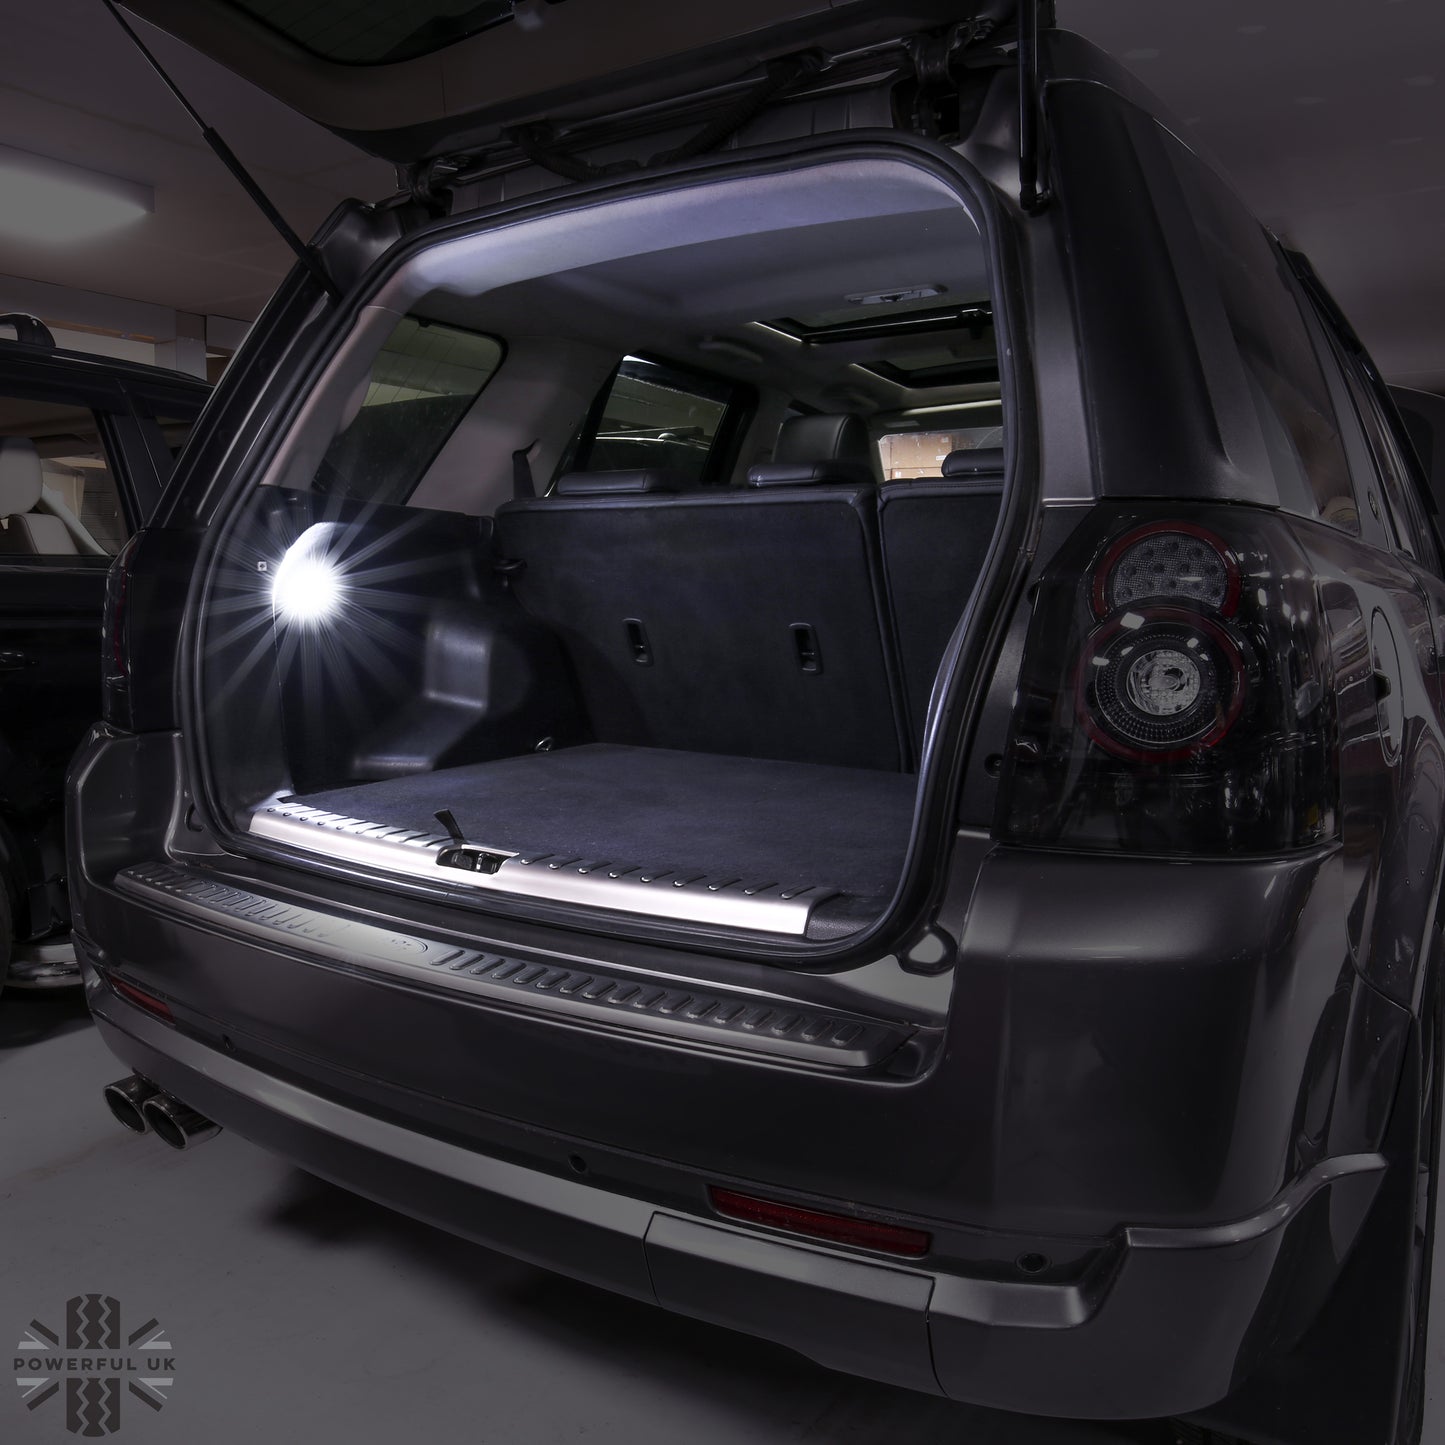 Interior Boot LED Light for Land Rover Freelander 2 - White